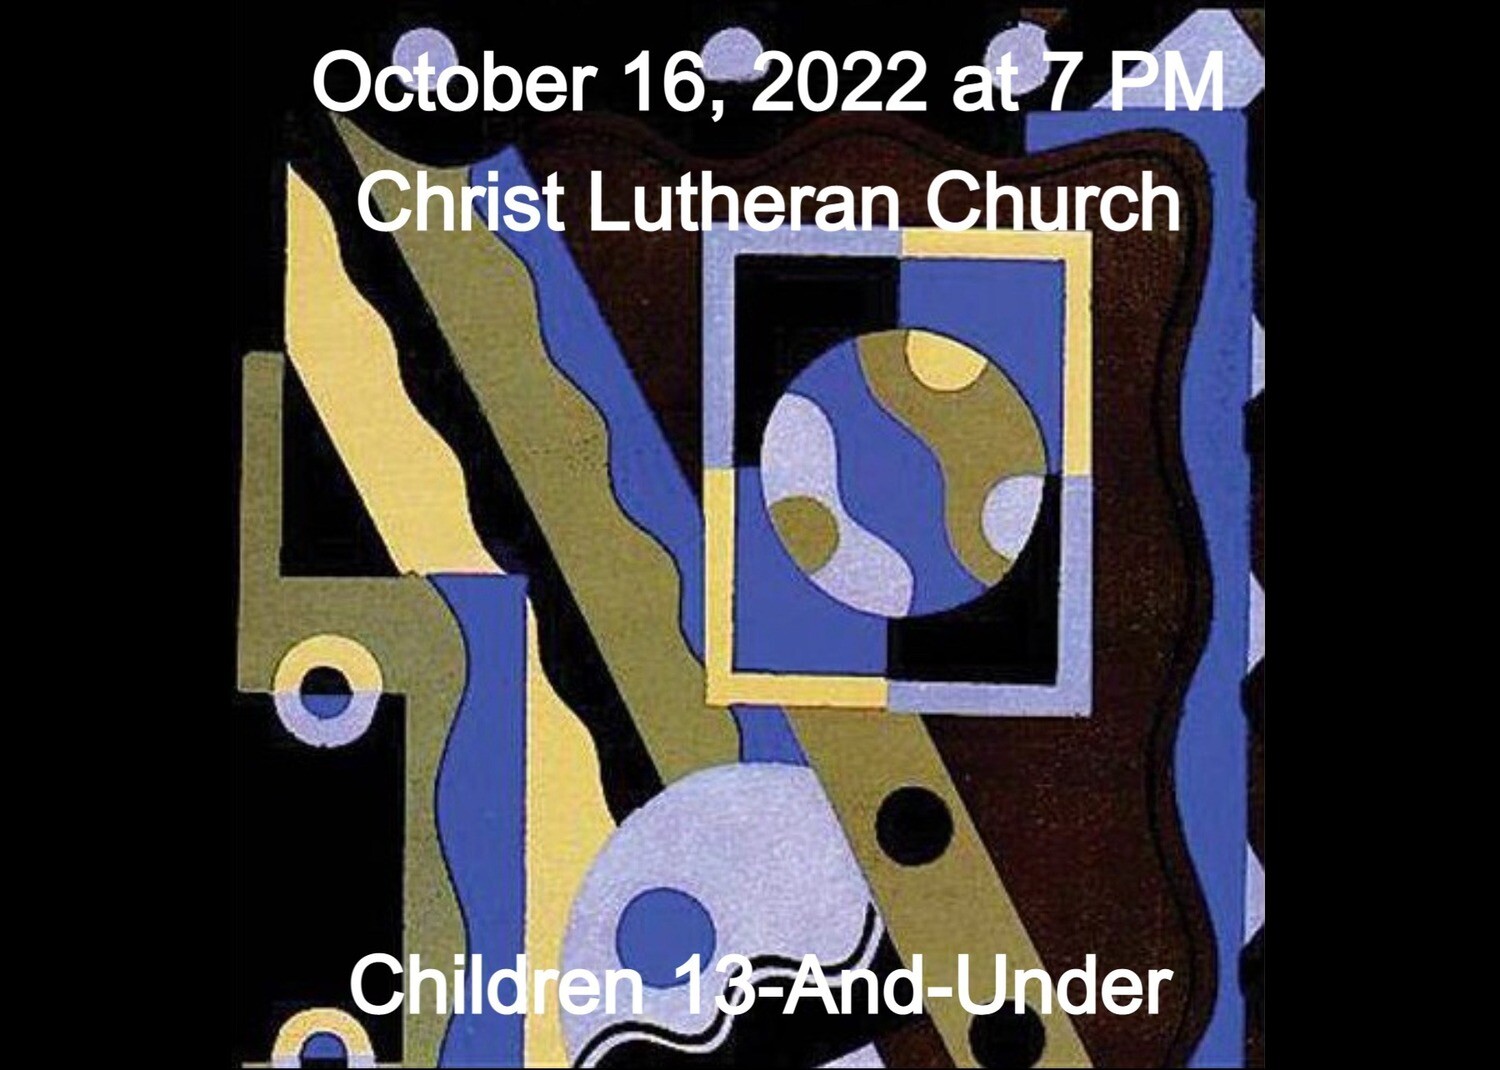 10/16 Concert Children 13-And-Under Tickets